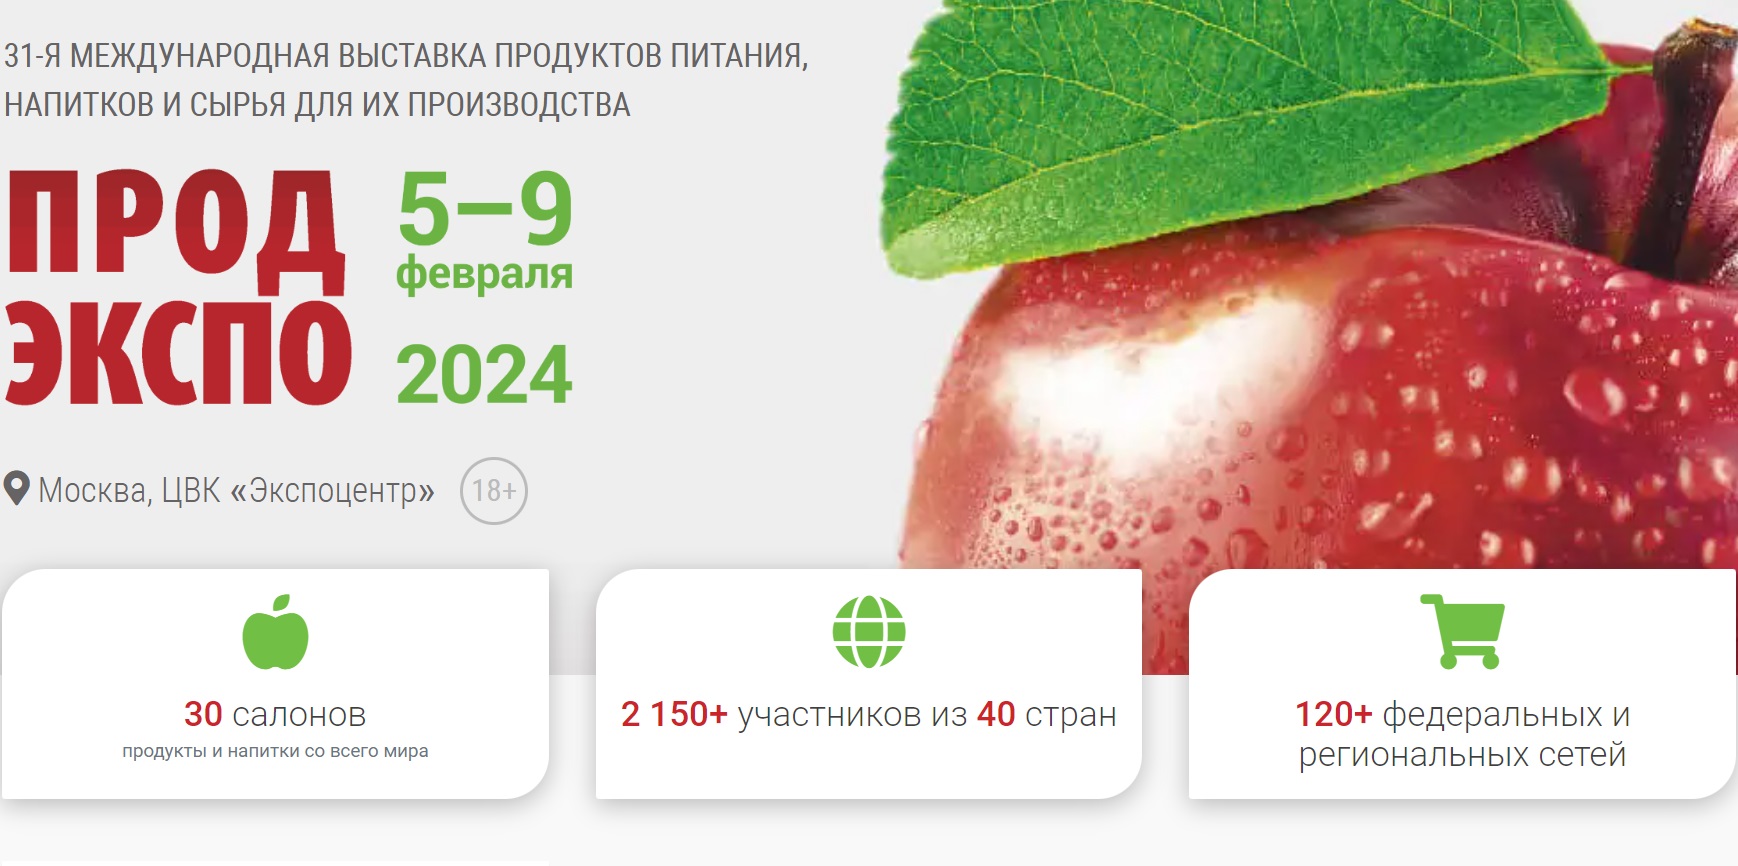 «Продэкспо-2024» 5-9 февраля – крупнейшая международная выставка продуктов питания и напитков в России и Восточной Европе.